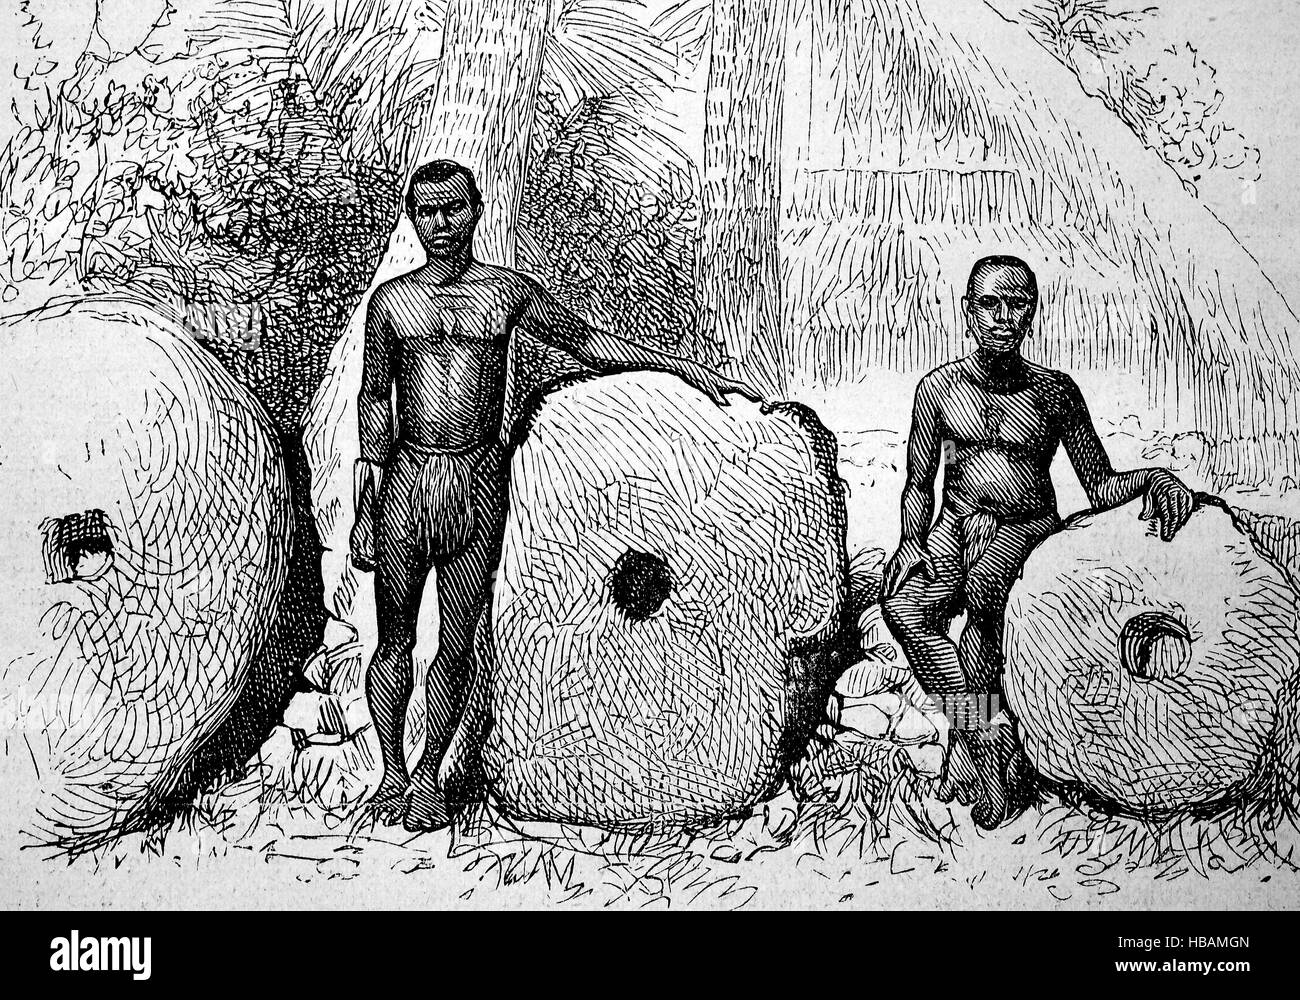 Rai, o dinero en piedra discos circulares de piedra tallada de piedra caliza, cantera en varias de las islas de Micronesia, ilustración hictorical desde 1880 Foto de stock